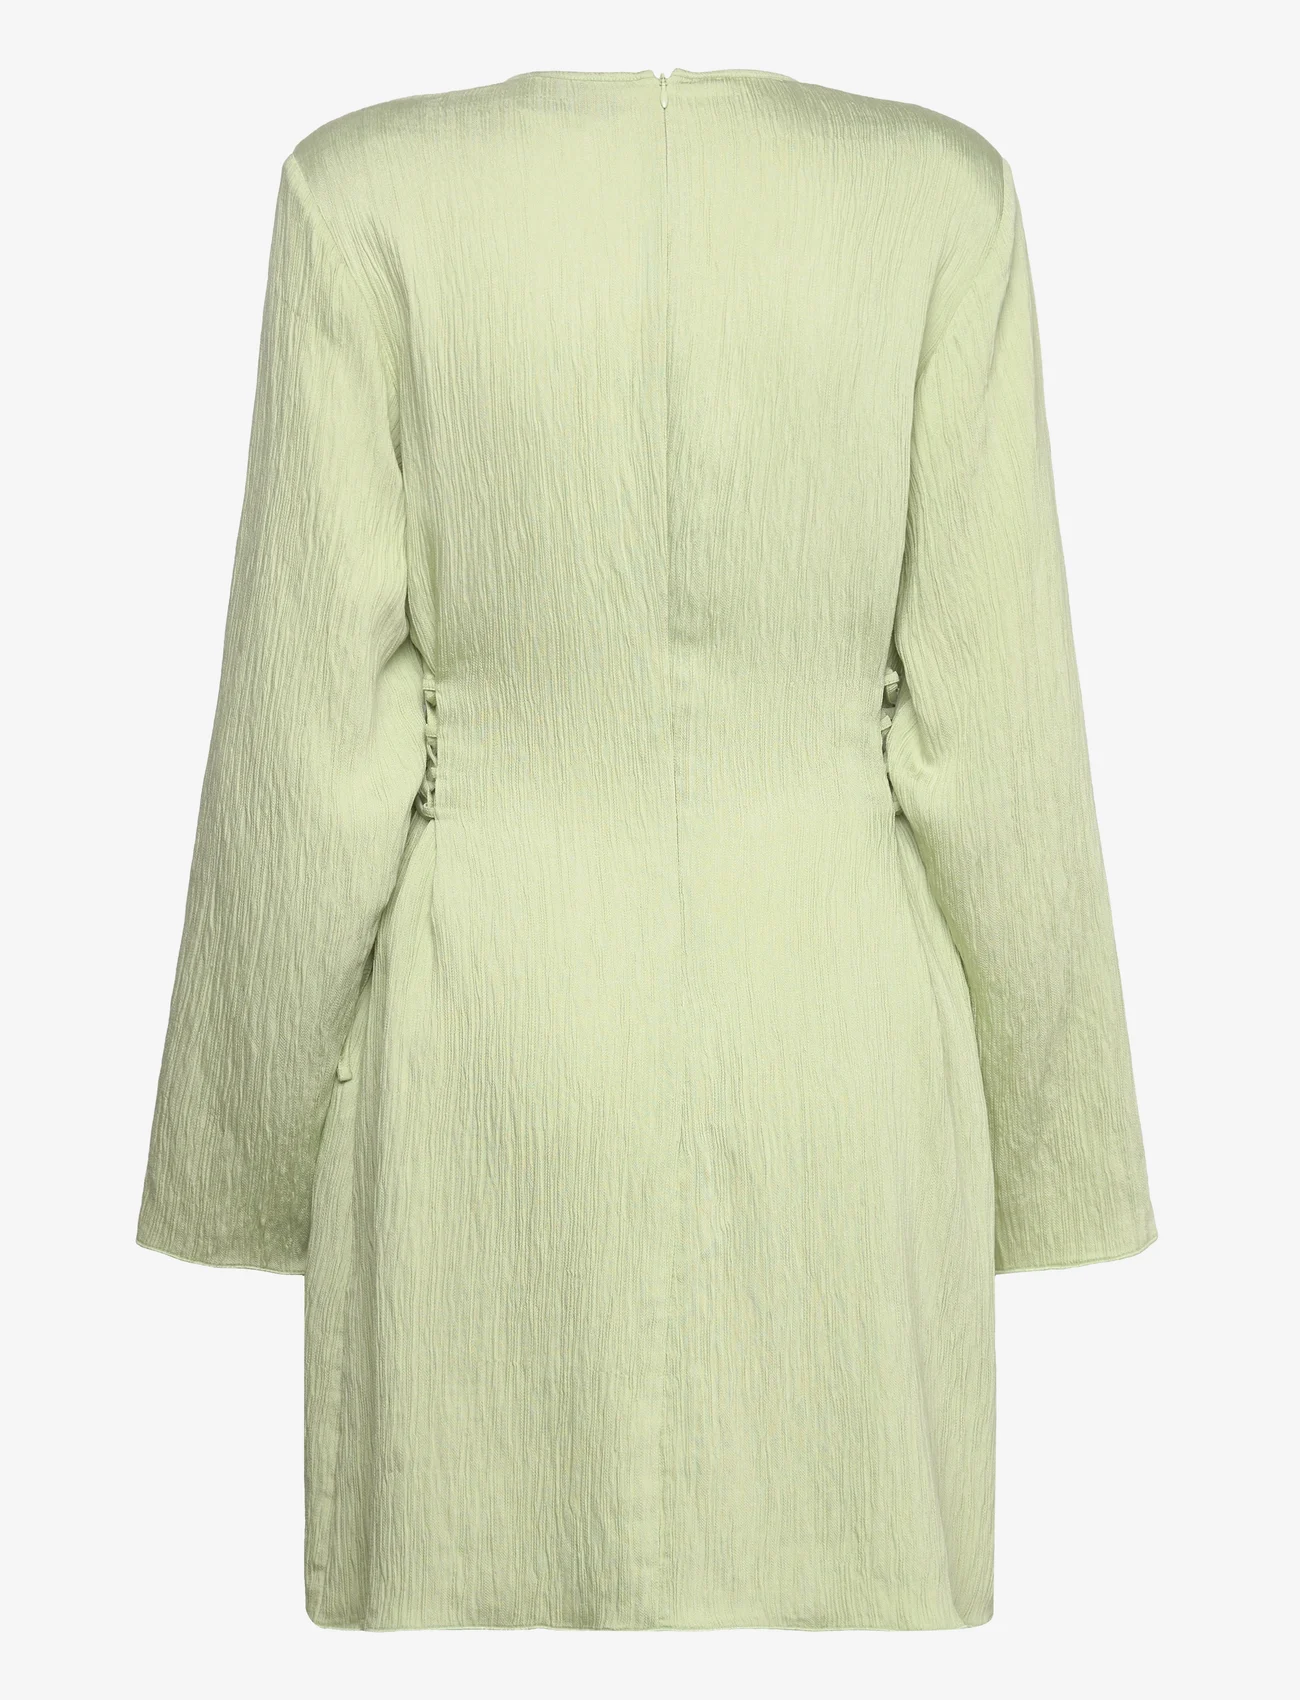 MAUD - Amelia Dress - odzież imprezowa w cenach outletowych - green - 1